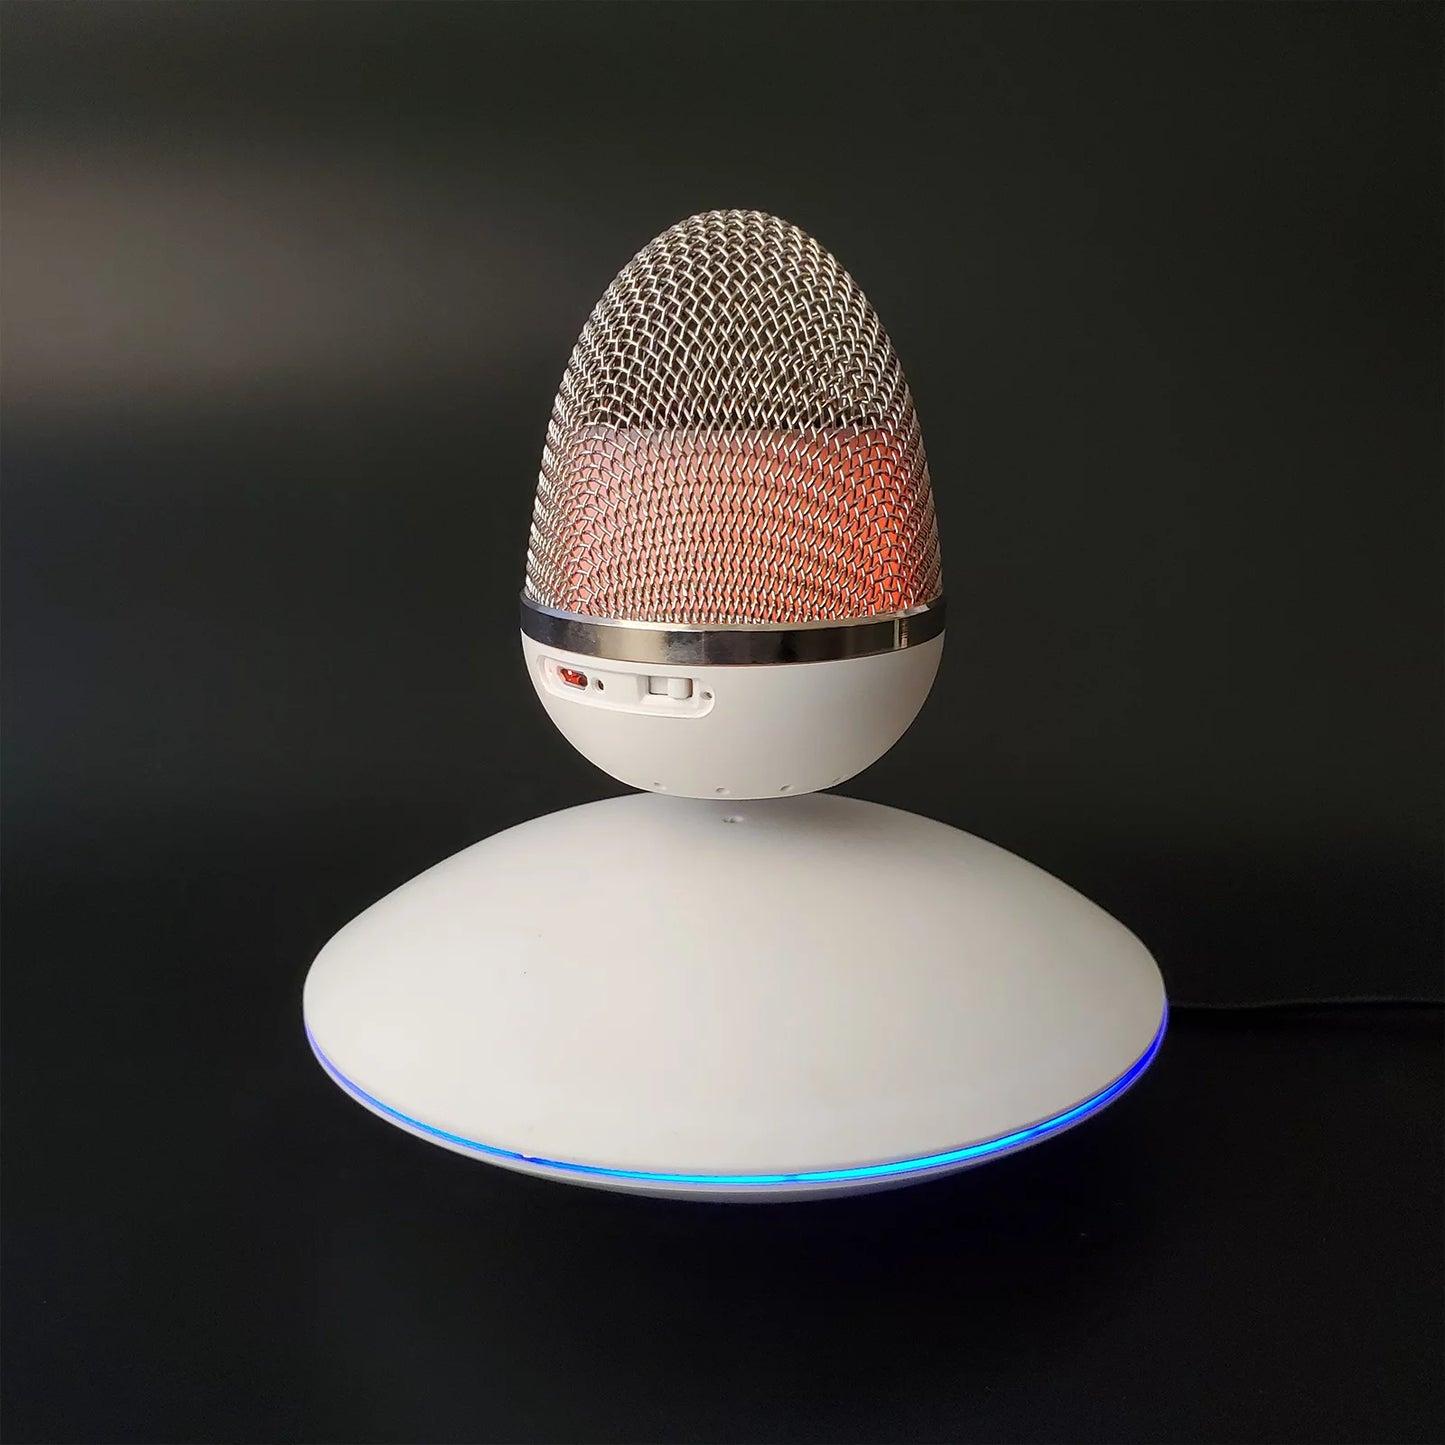 Magnetic Levitating Bluetooth Egg Shape Speaker